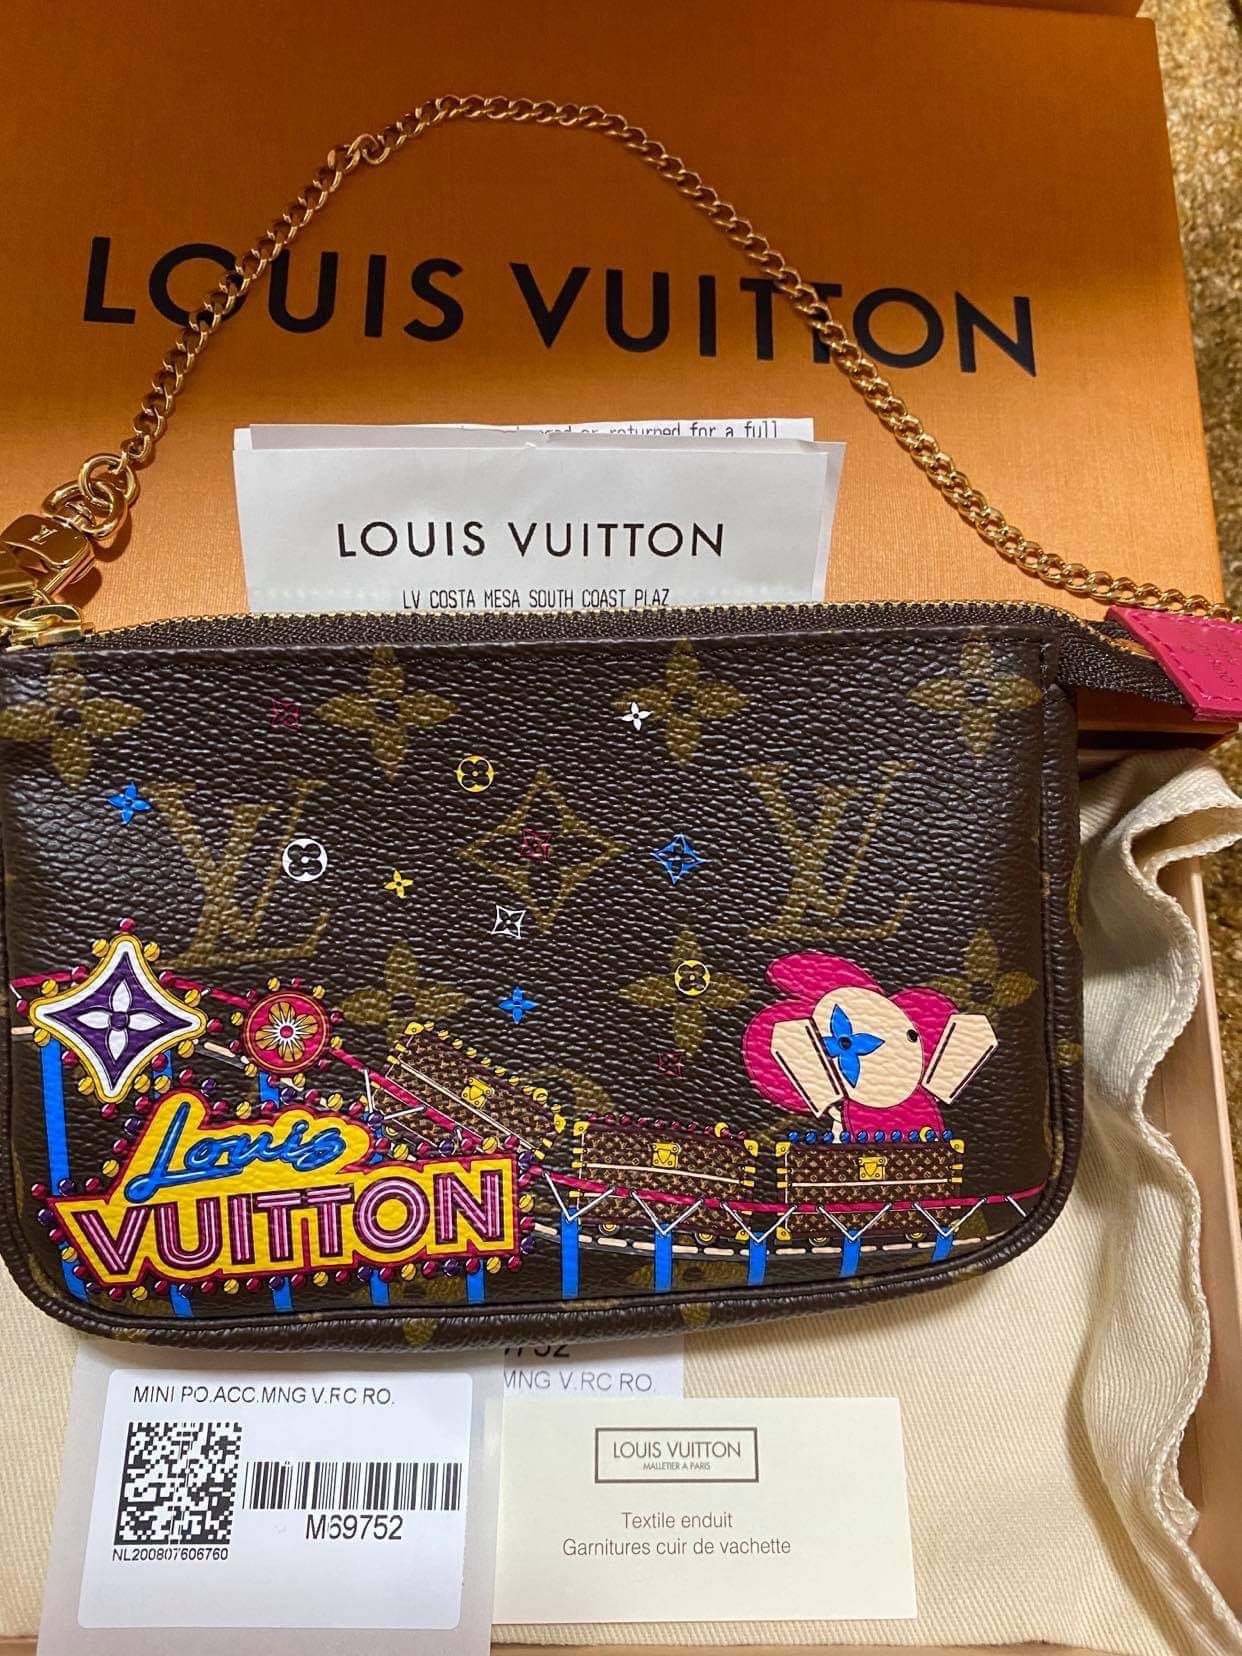 Louis Vuitton mini pochette accessories